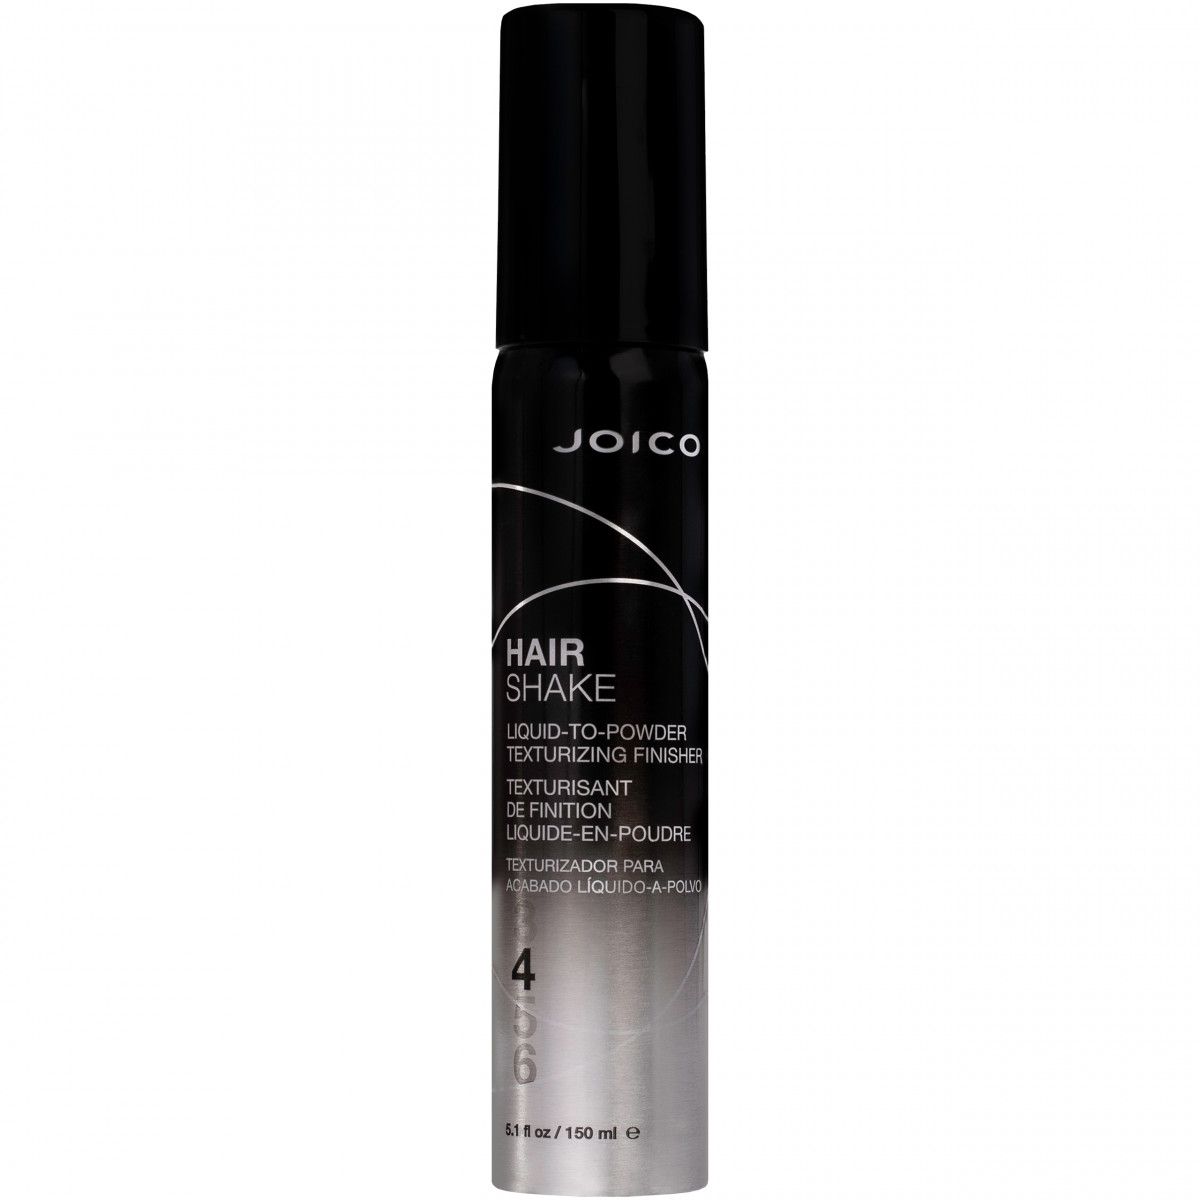 Joico Hair Shake Liquid To Powder Finishing Texturizer – puder do stylizacji włosów, 150ml